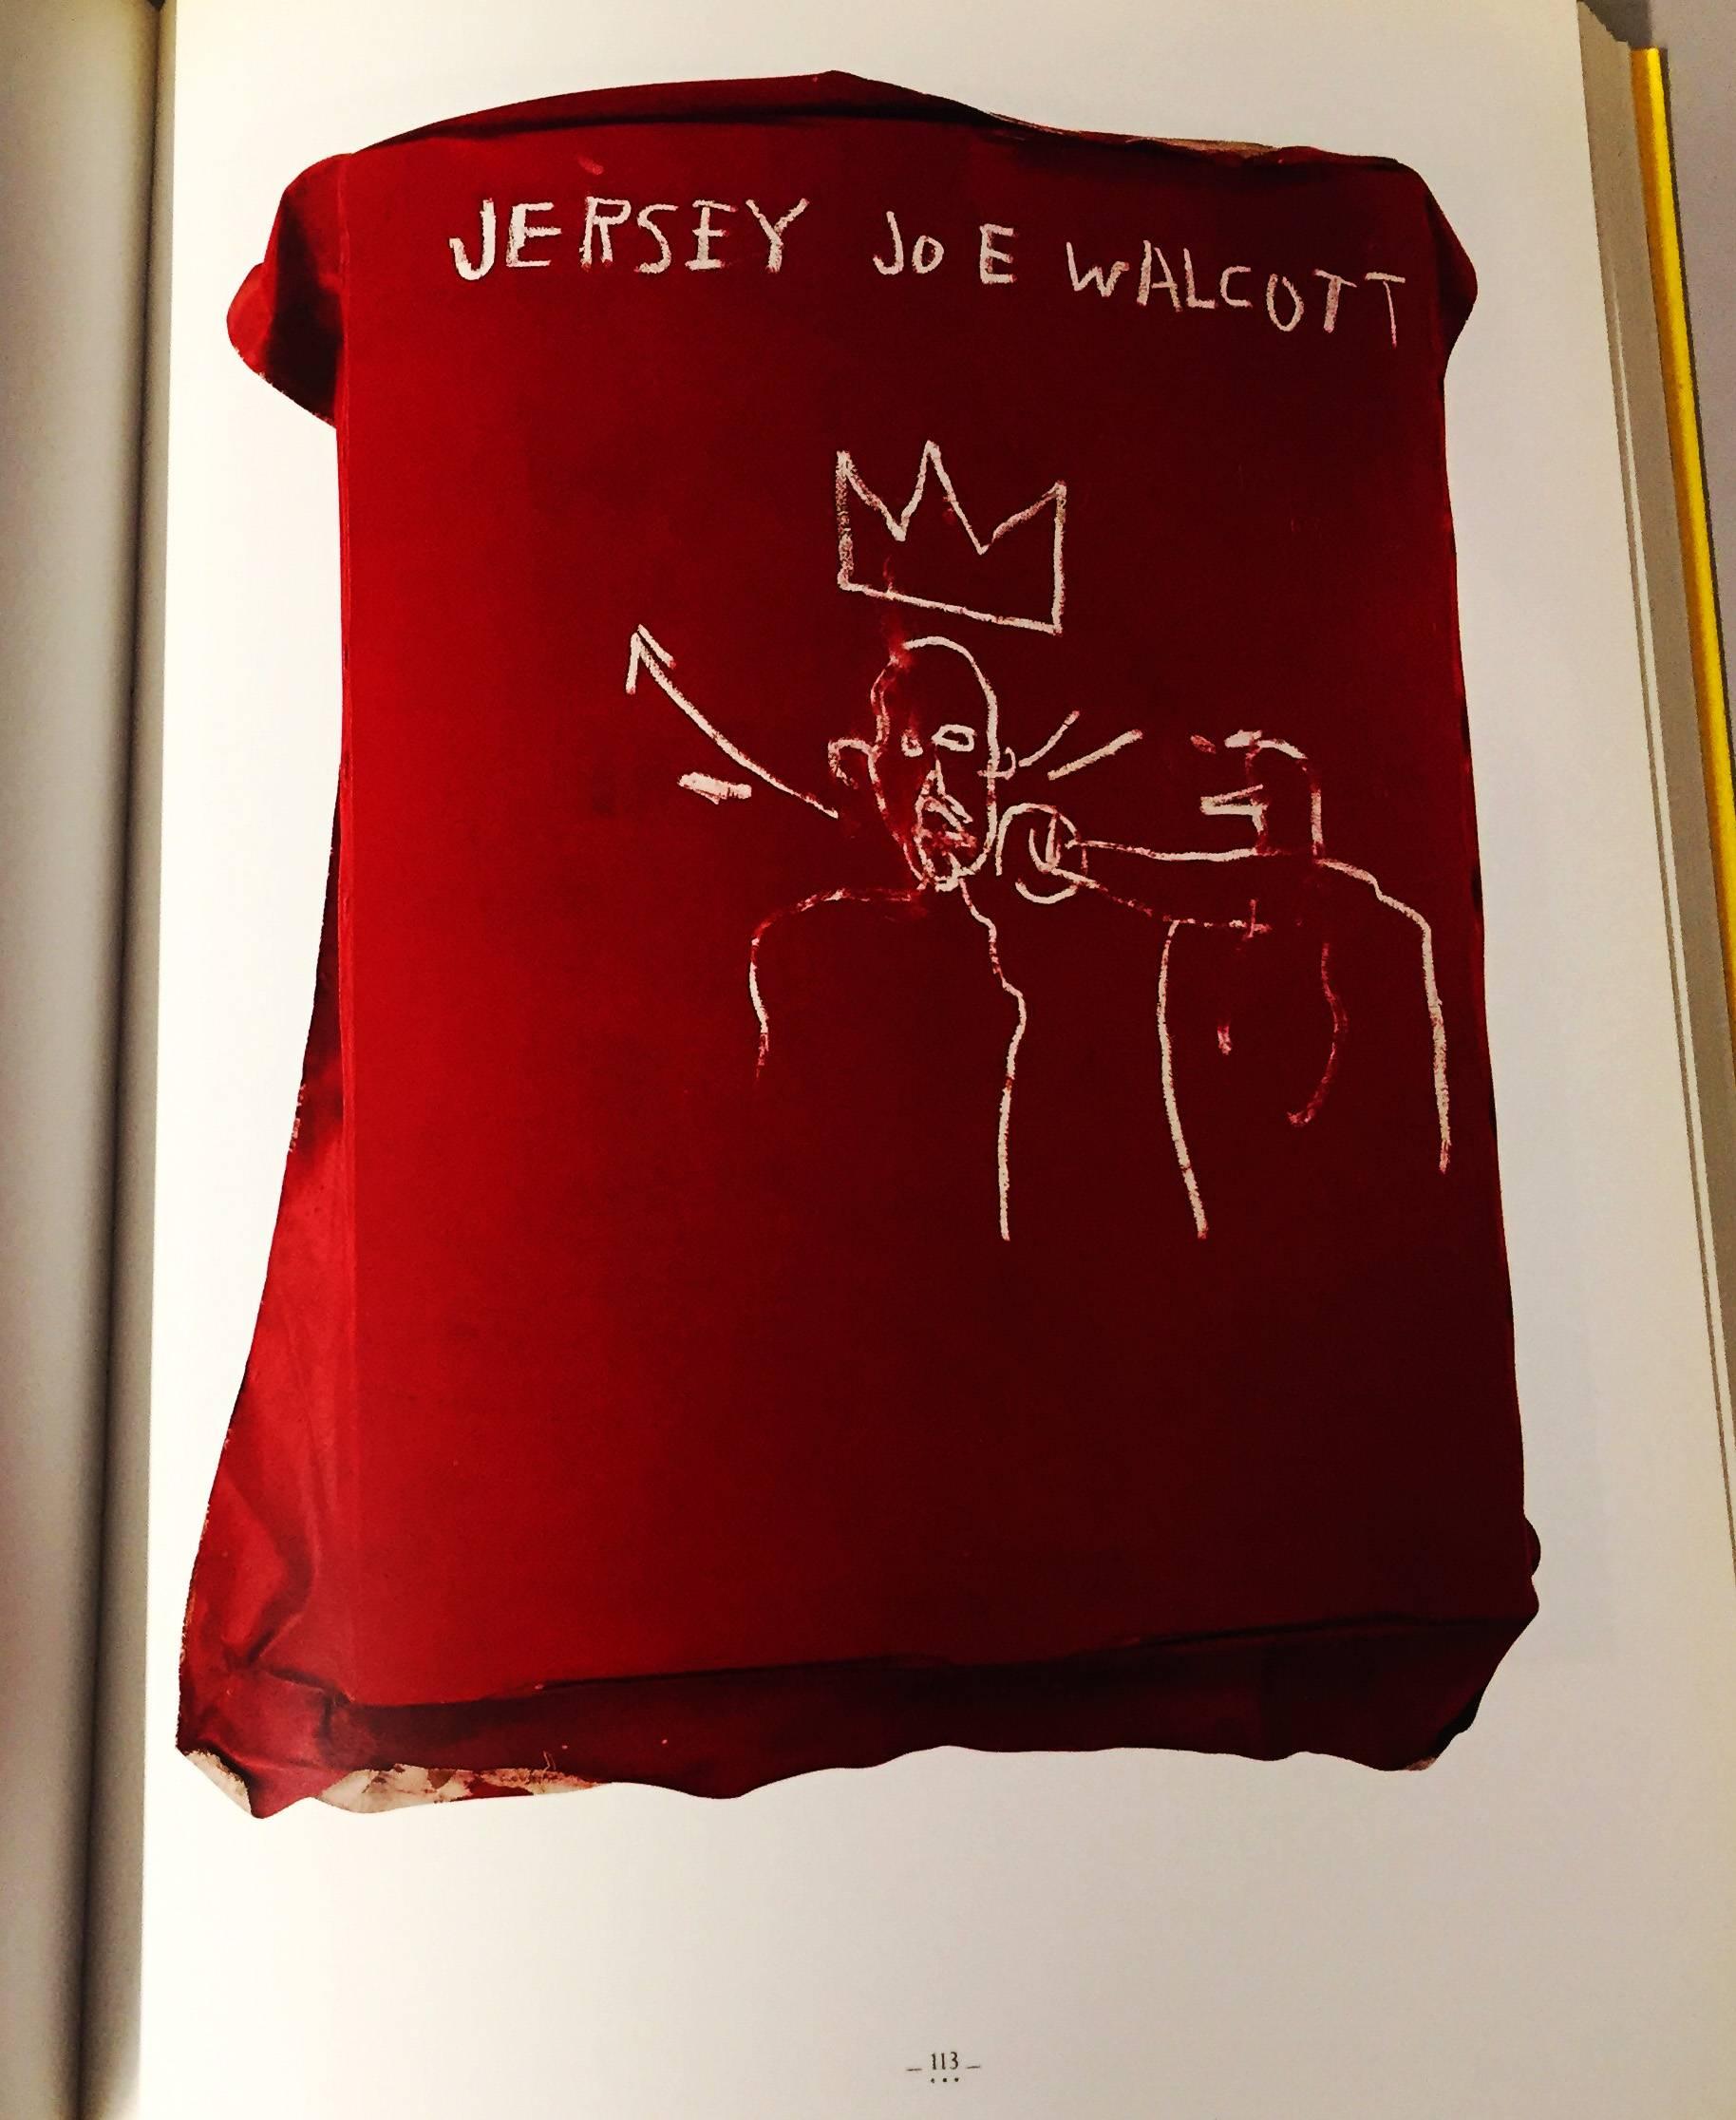 Basquiat Marseille exhibition catalog 1992 - Pop Art Print by after Jean-Michel Basquiat